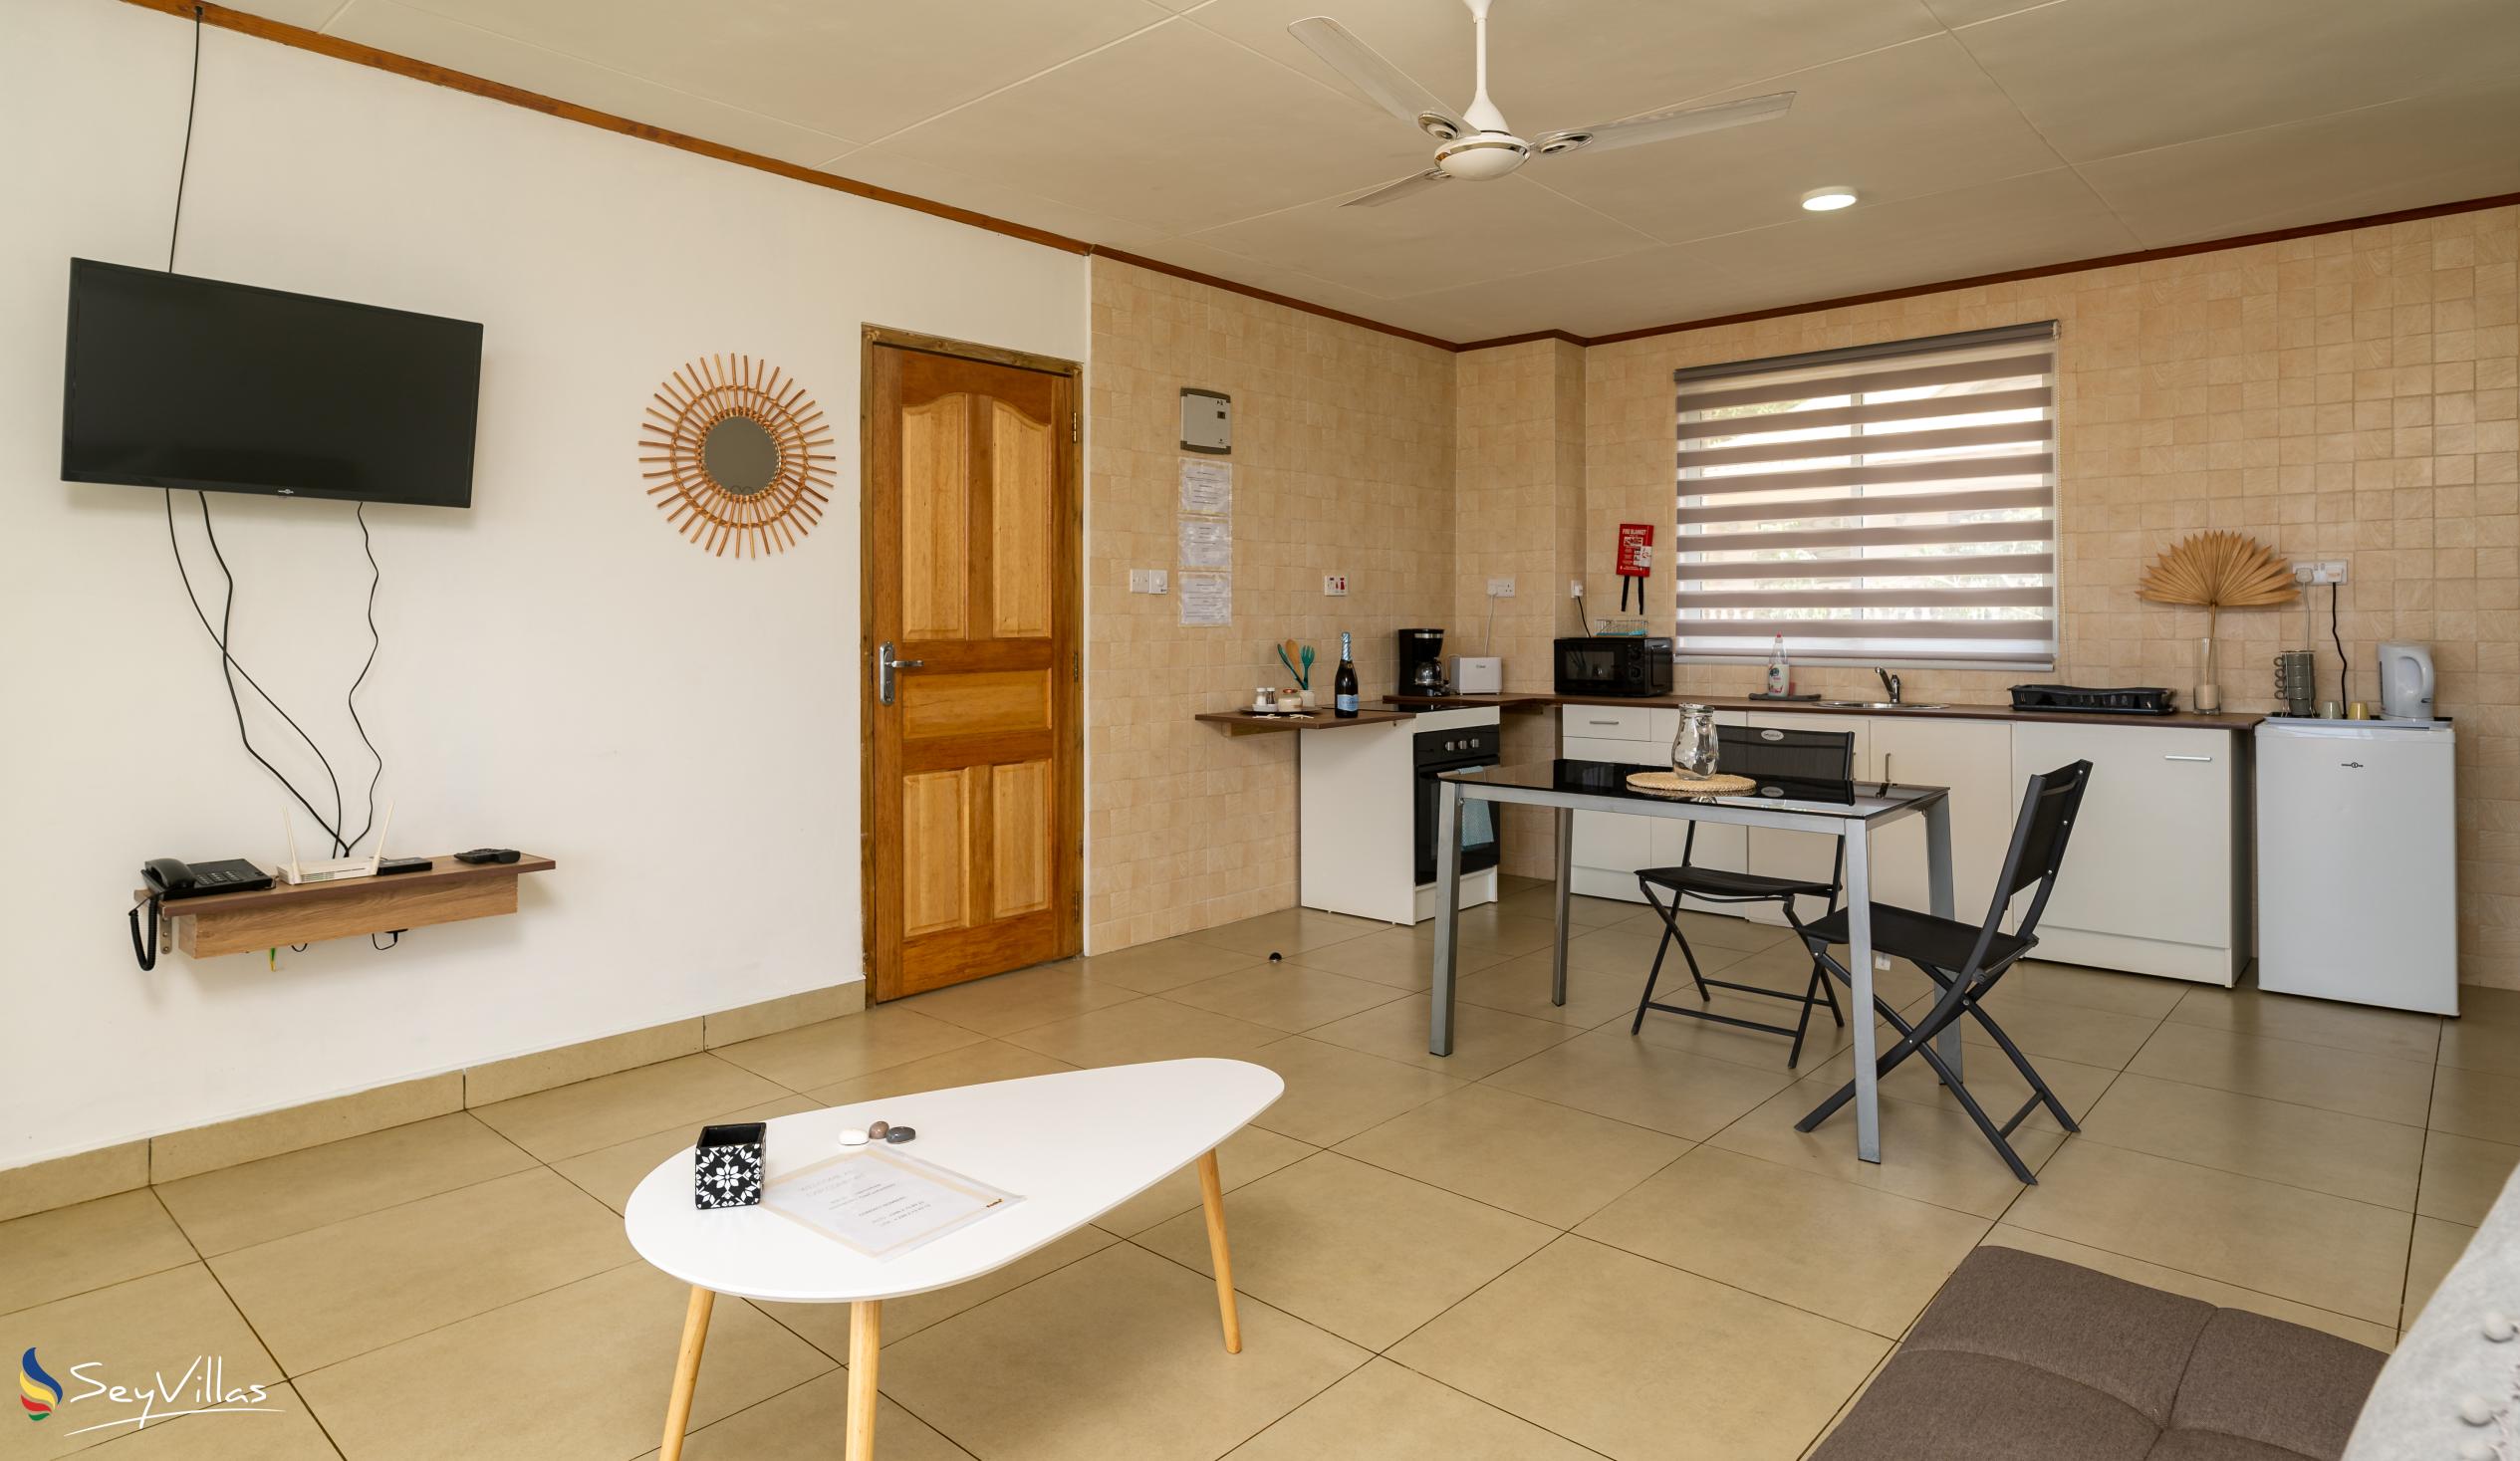 Photo 74: Cap Confort - 1-Bedroom Apartment - Mahé (Seychelles)